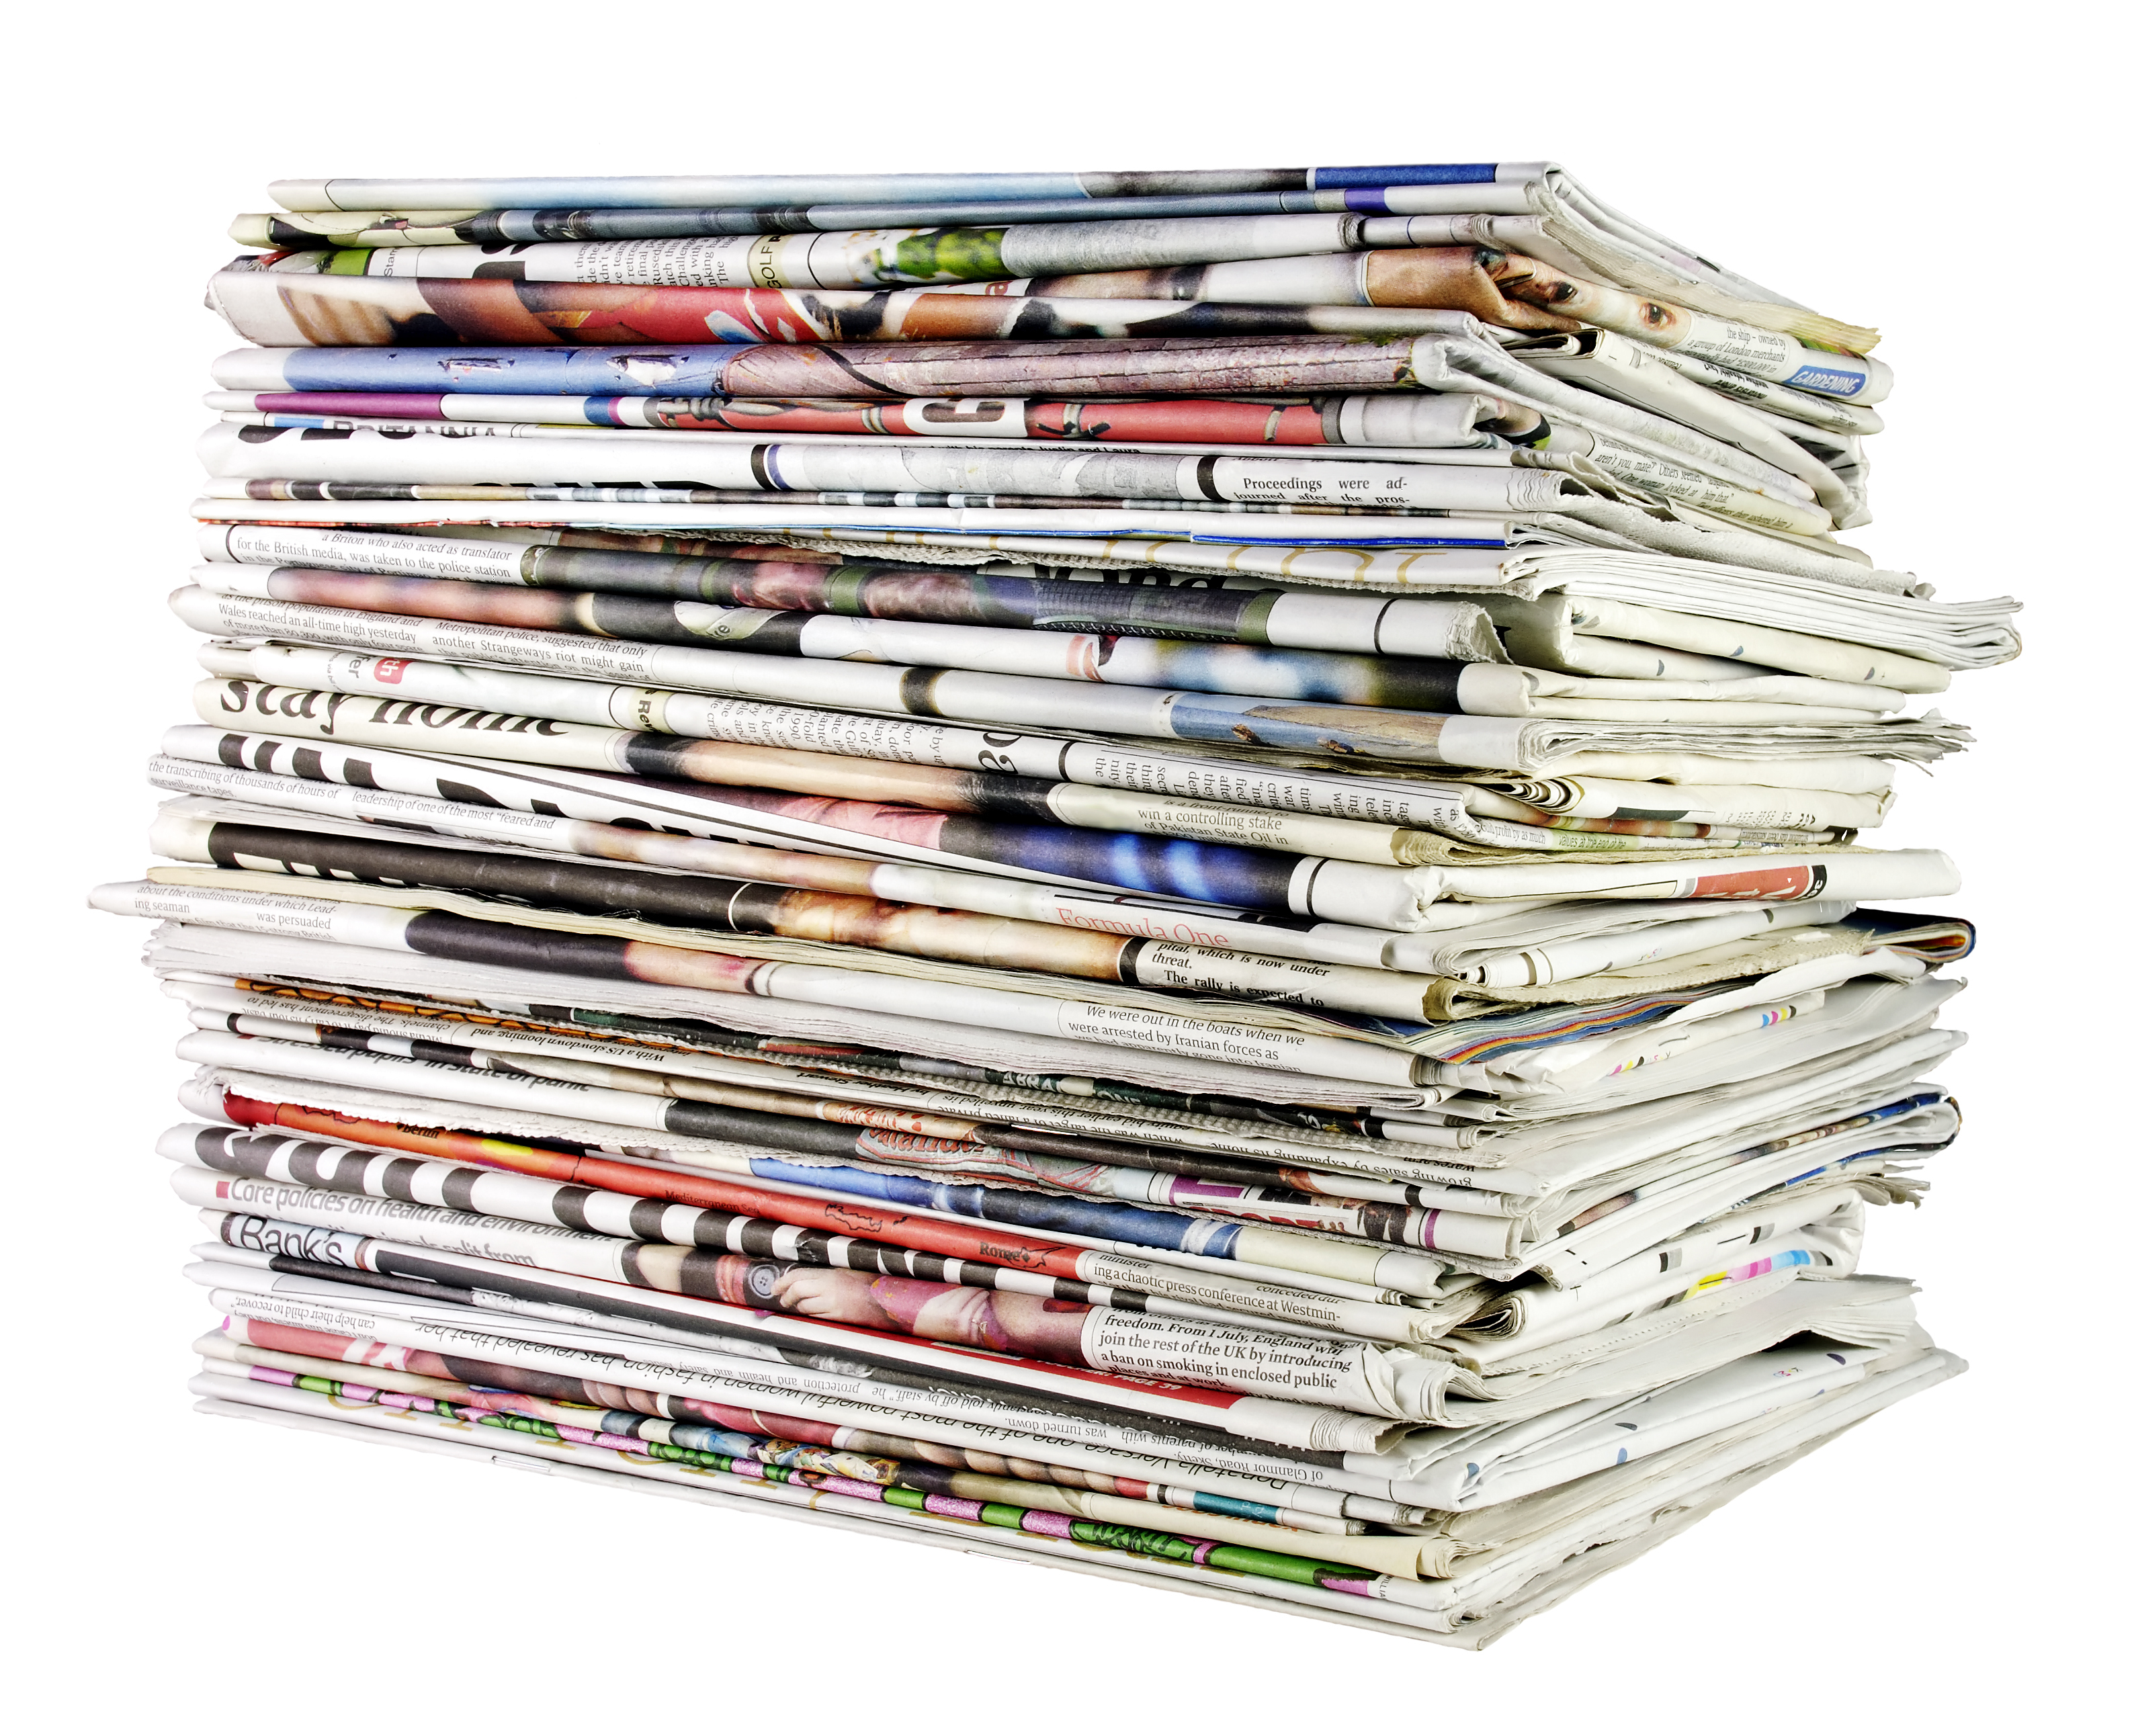 BRAT: Scăderi ale vânzărilor pentru ziarele româneşti în ultimul trimestru din 2015